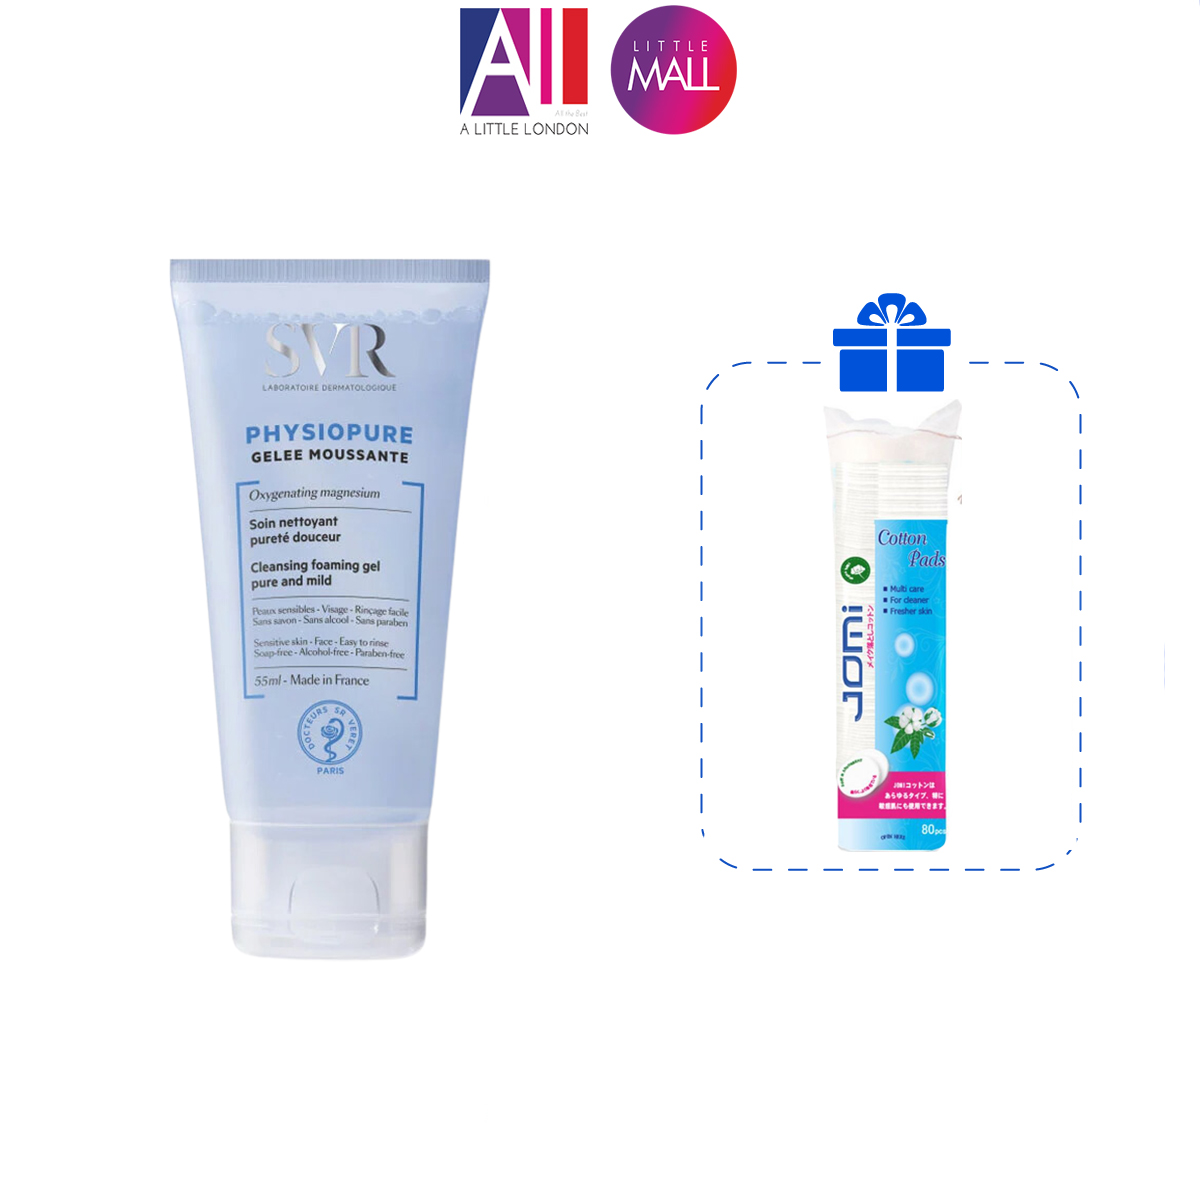 Gel rửa mặt dành cho da nhạy cảm SVR physiopure gelee moussante TẶNG bông tẩy trang Jomi/ Ampoule chống lão hóa Martiderm (Nhập khẩu)